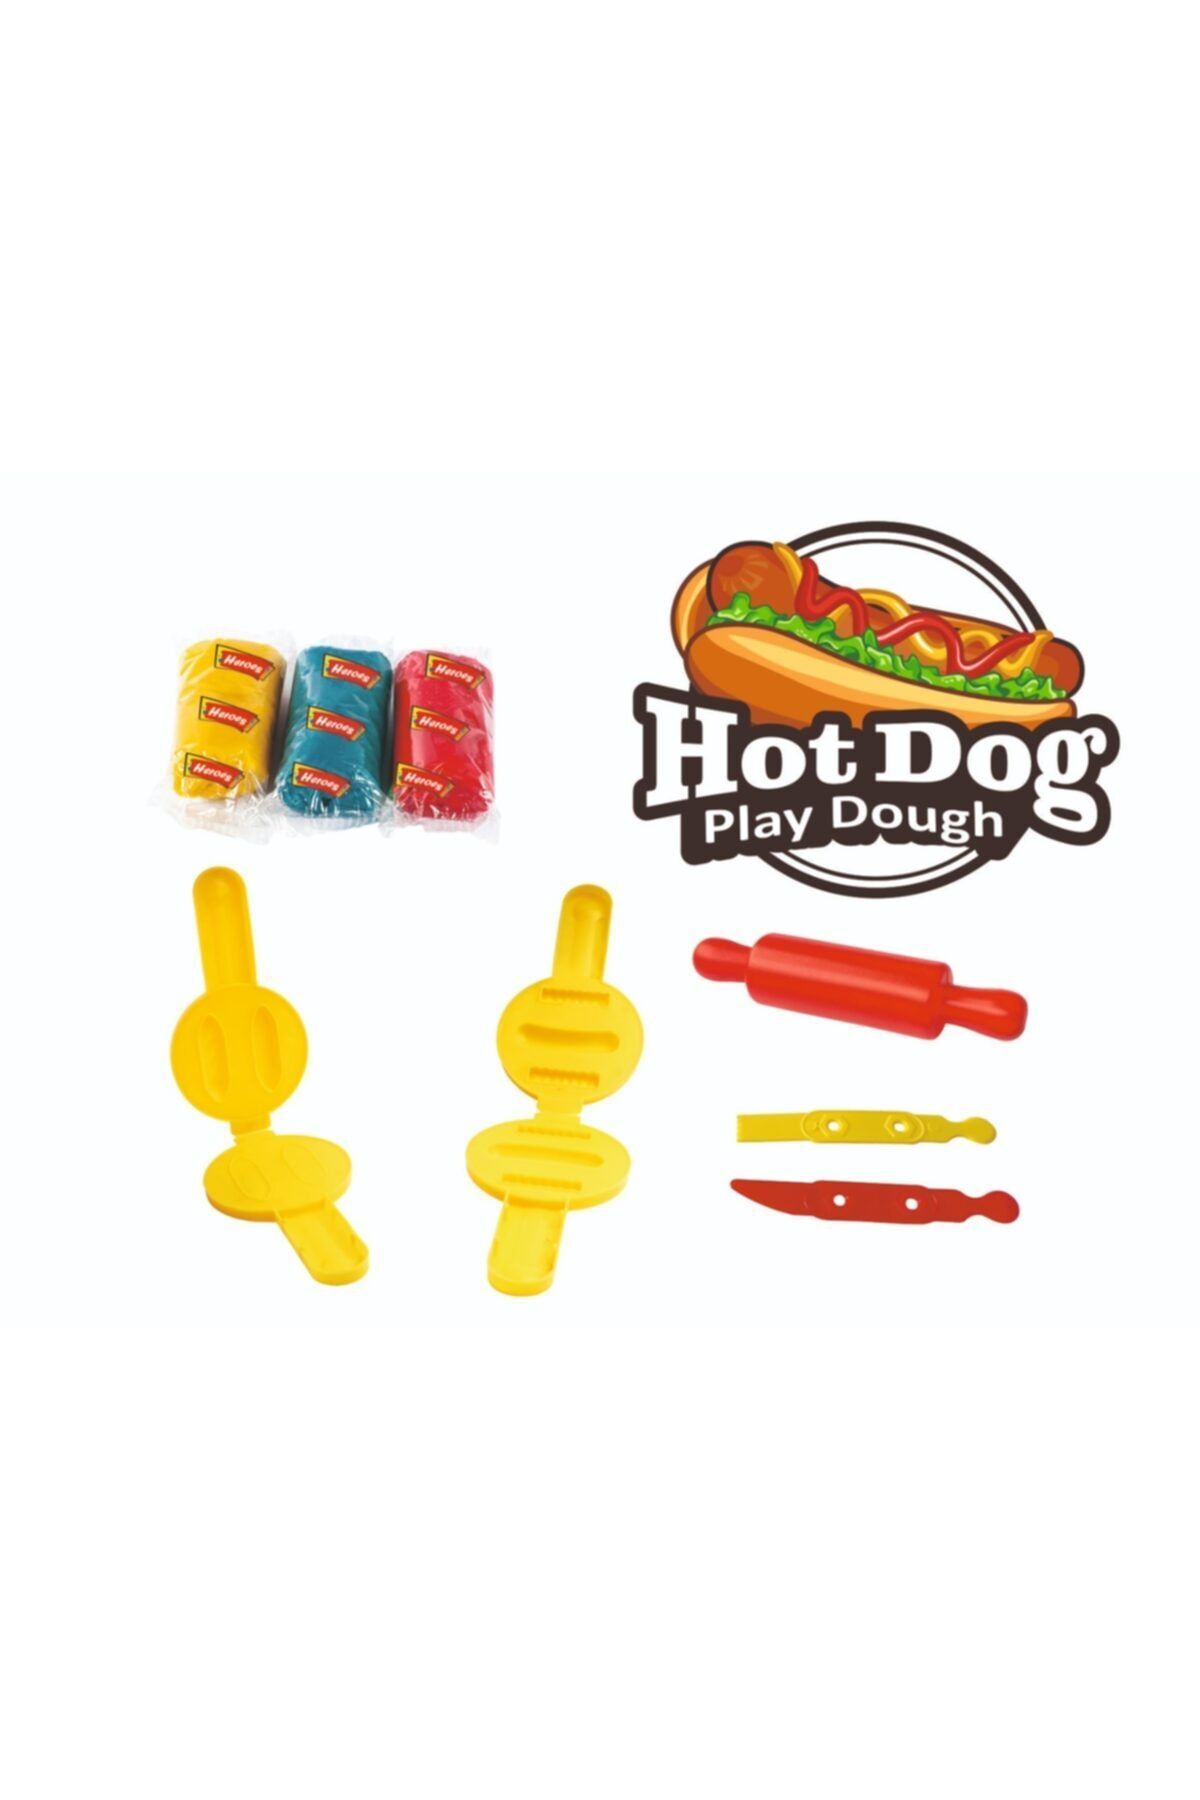 Heroes Hotdog Mini Oyun Hamuru,sosis Oyun Hamuru Set 8 Parça